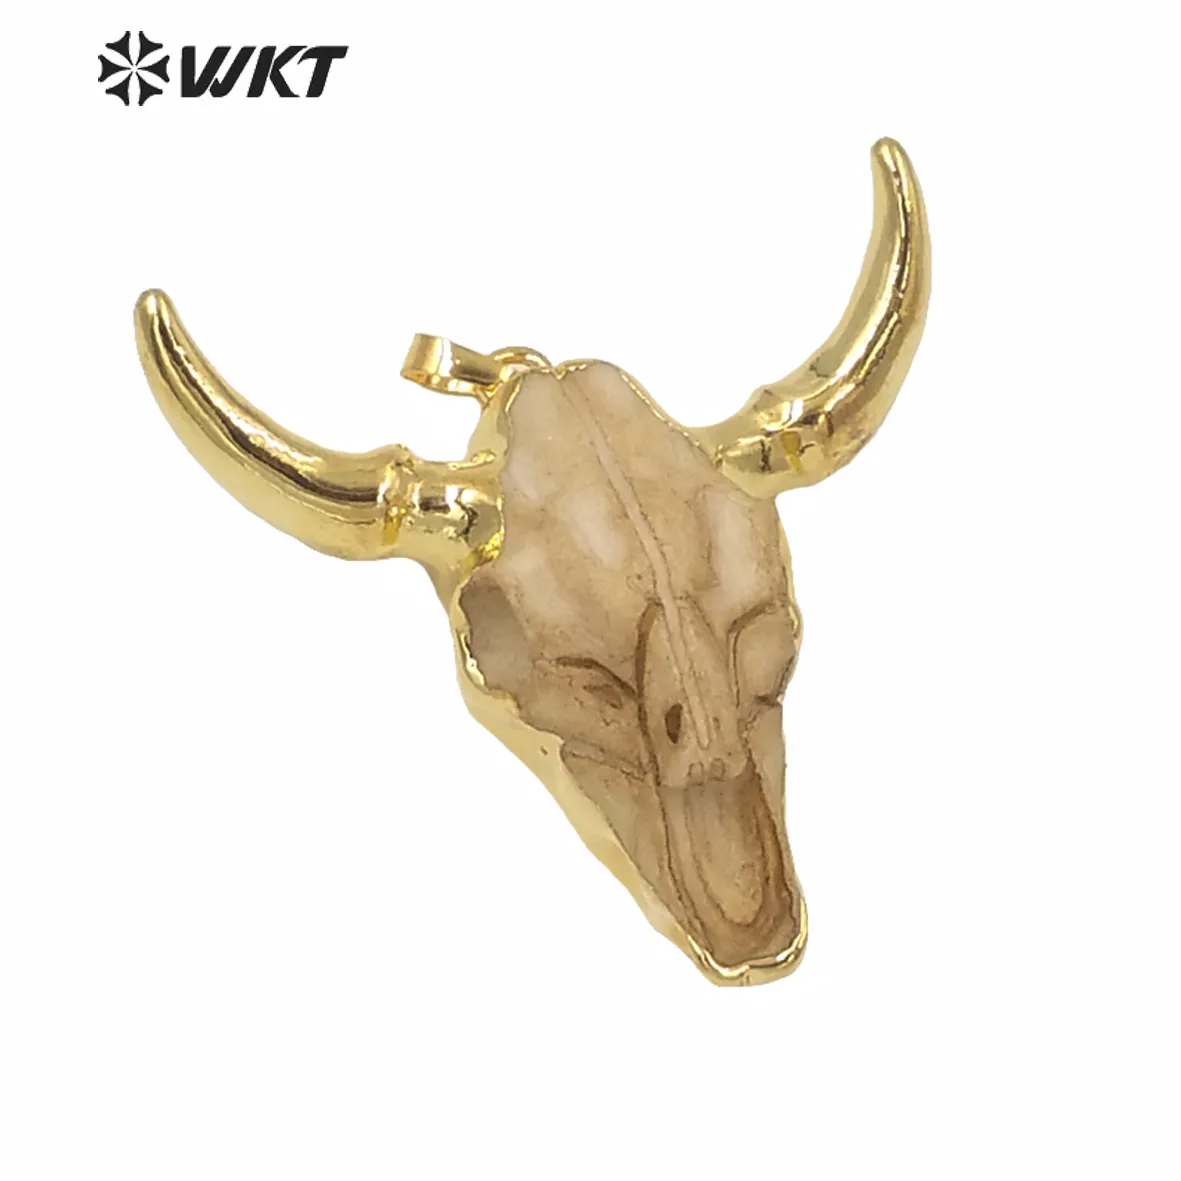 WT-P1338Wholesale colgante de cuerno de ganado de resina chapado en oro de 24k, nuevo colgante de cuerno de cabeza de ganado de toro chapado en oro de moda diseño único